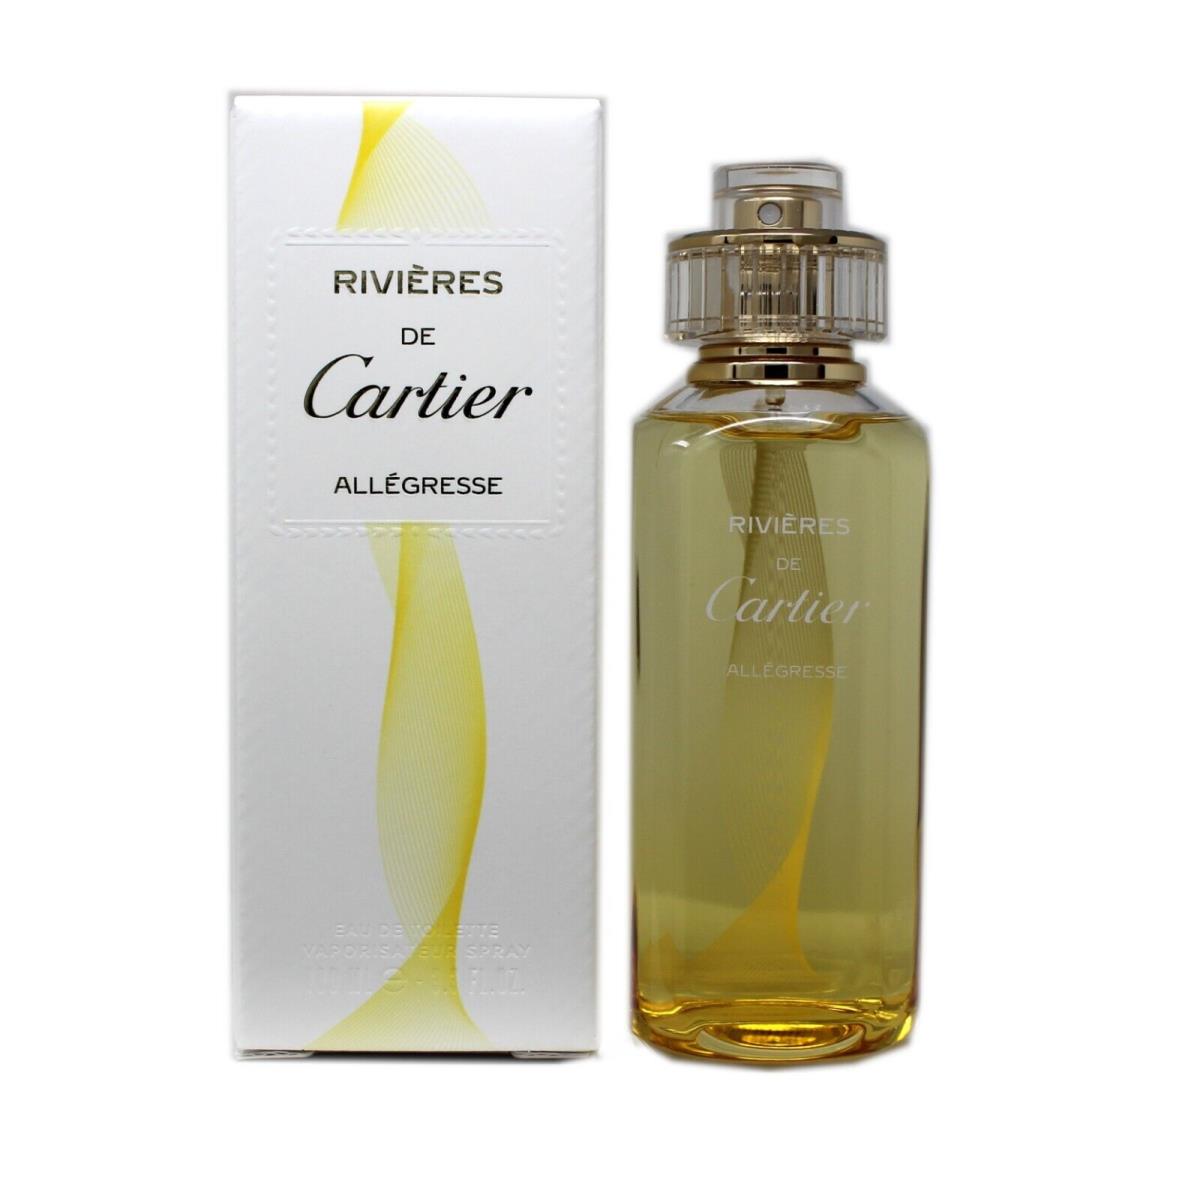 Cartier Rivieres DE Cartier Allegresse Eau DE Toilette Spray 100 ML/3.3 Fl.oz